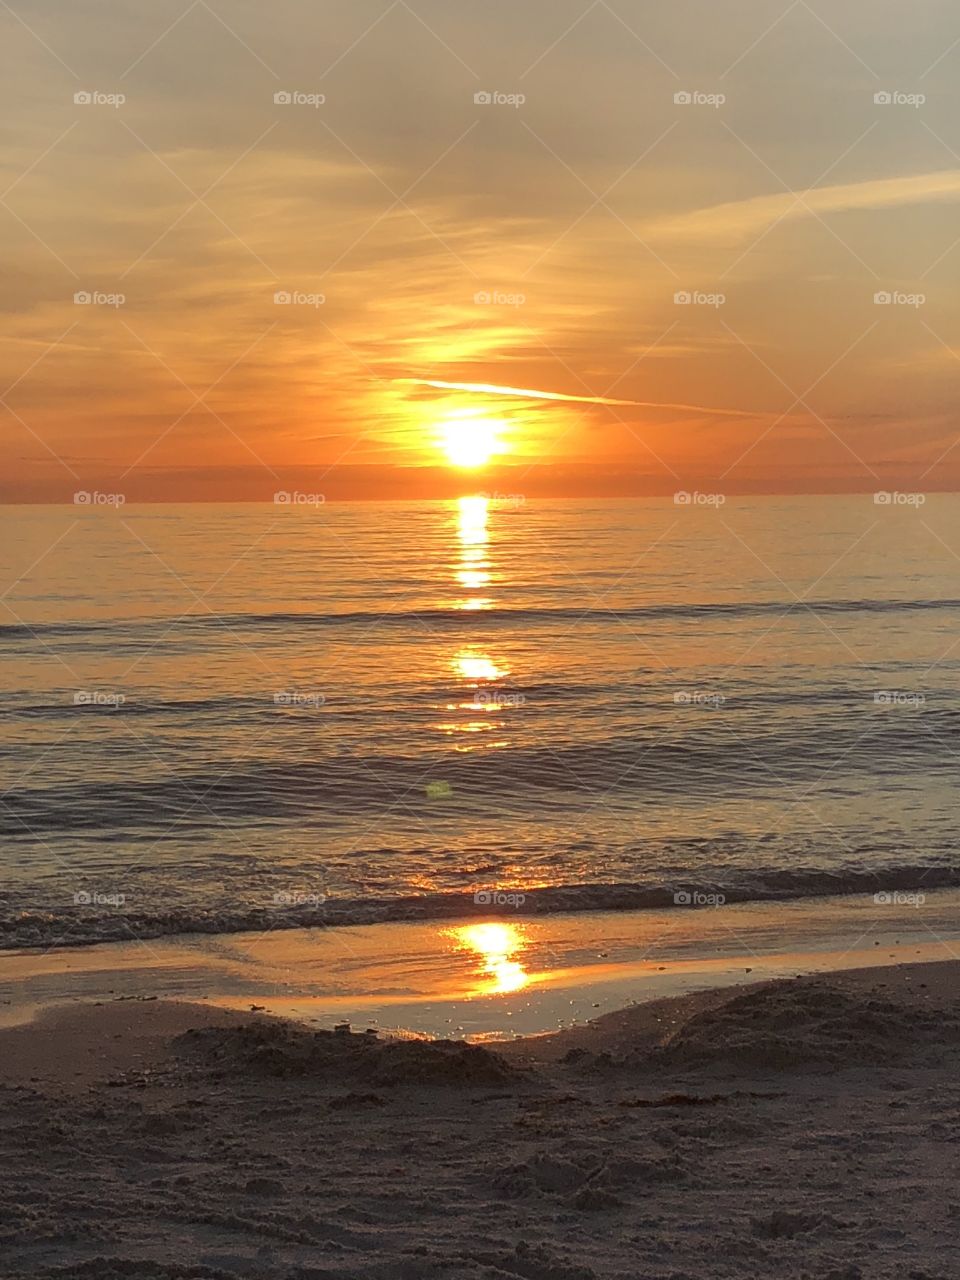 Gulf sunset 